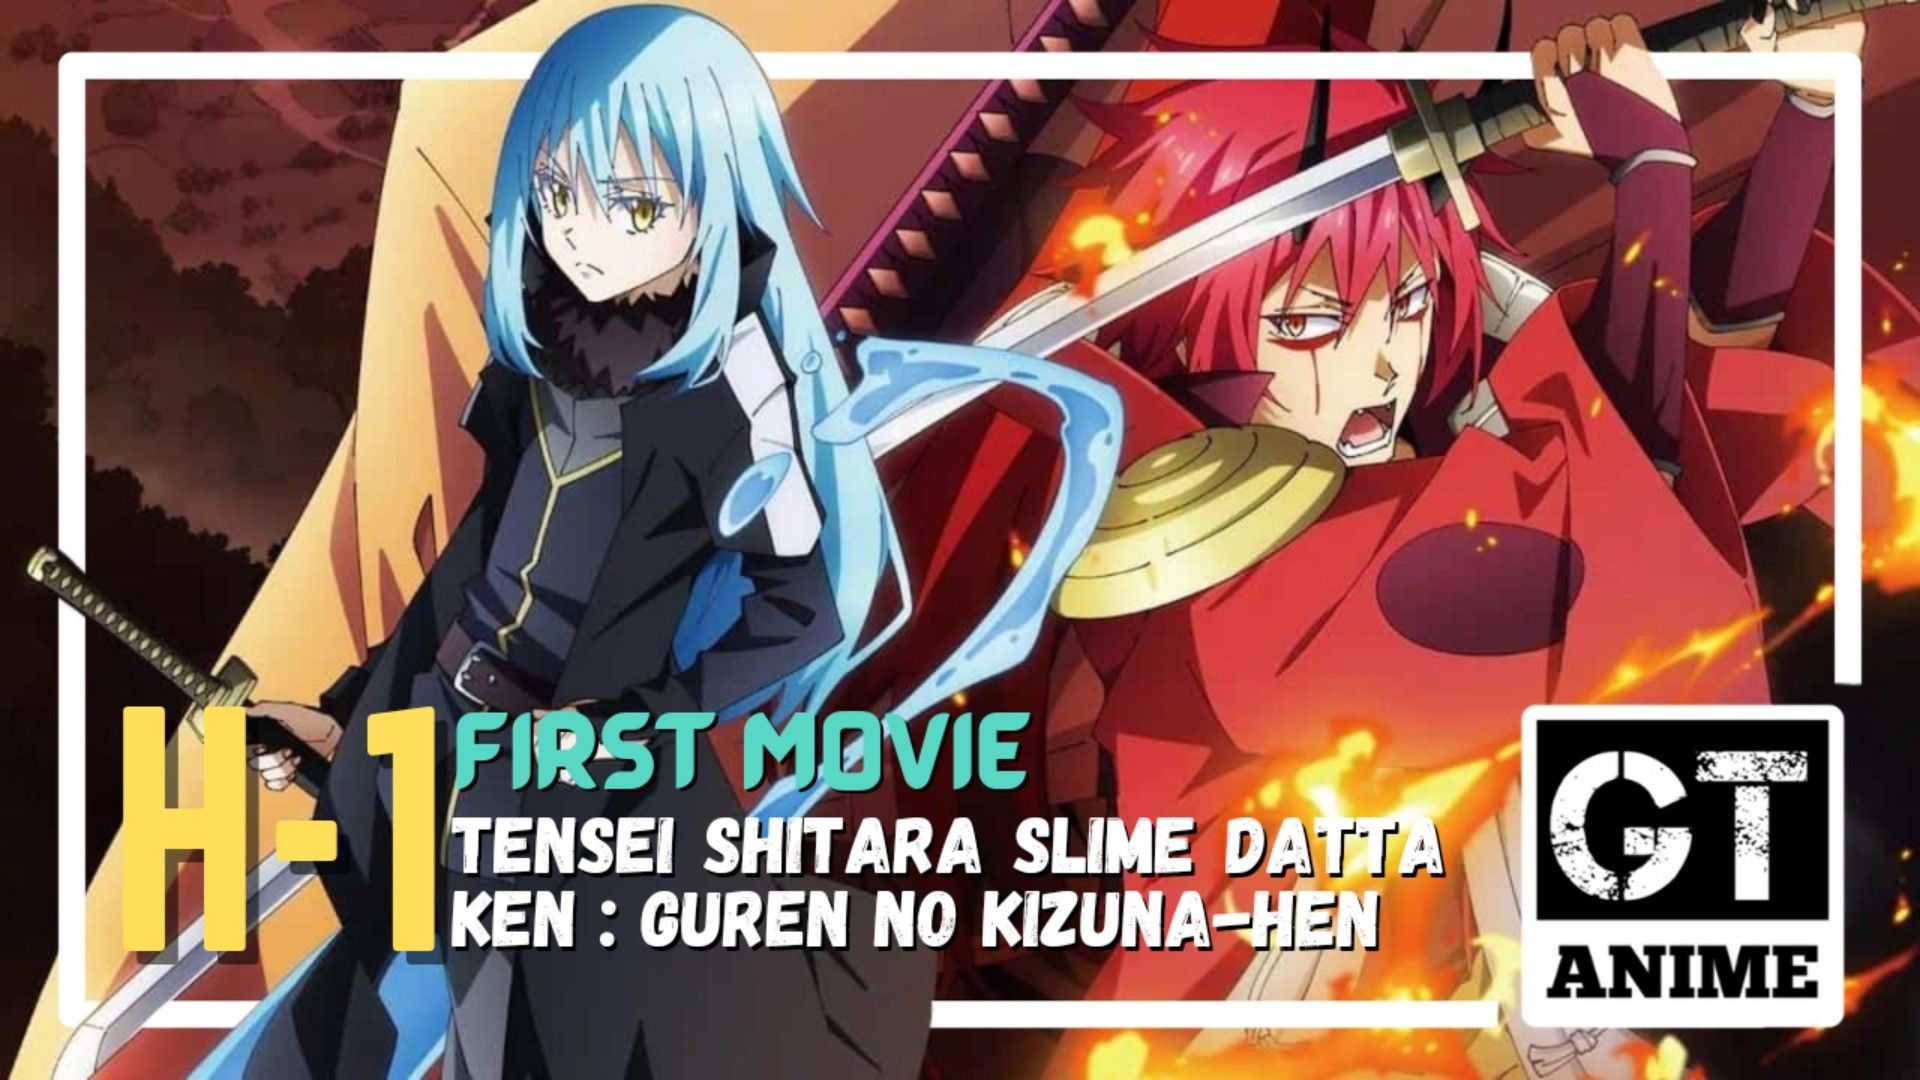 Tensei Shitara Slime Datta Ken Movie: Guren No Kizuna-Hen's Box